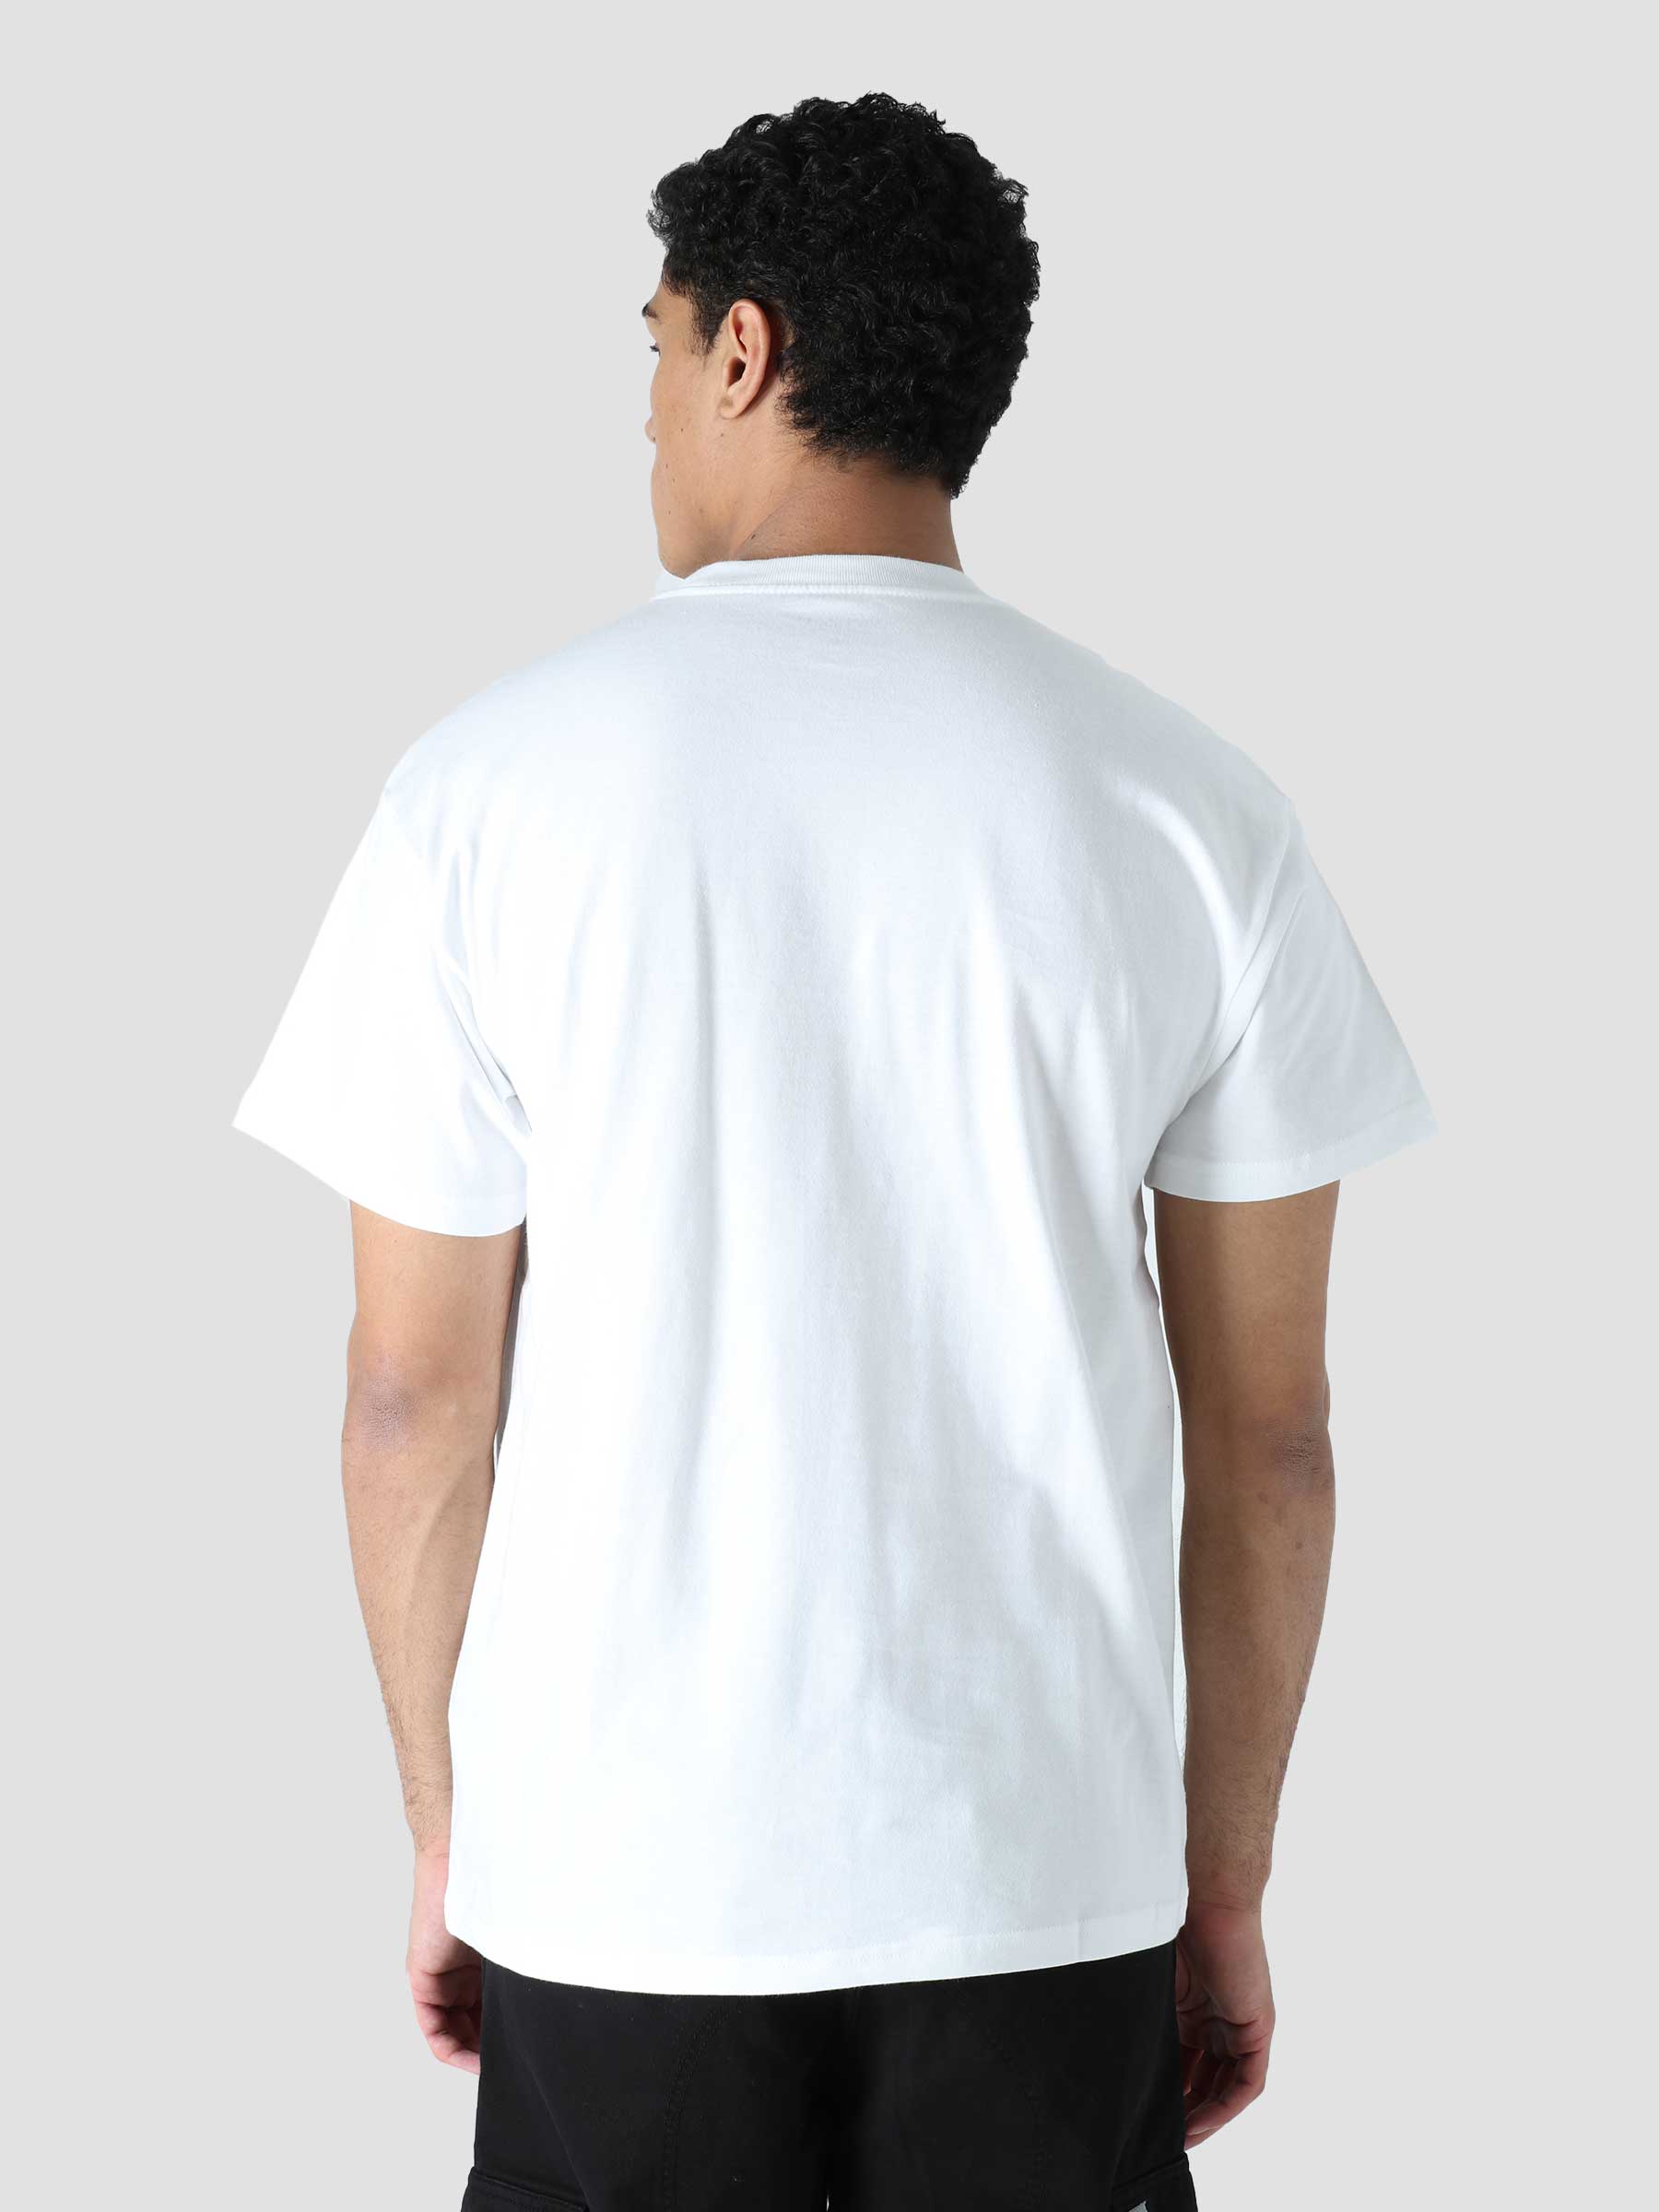 S/S Crht Ducks T-Shirt White I030207-02XX